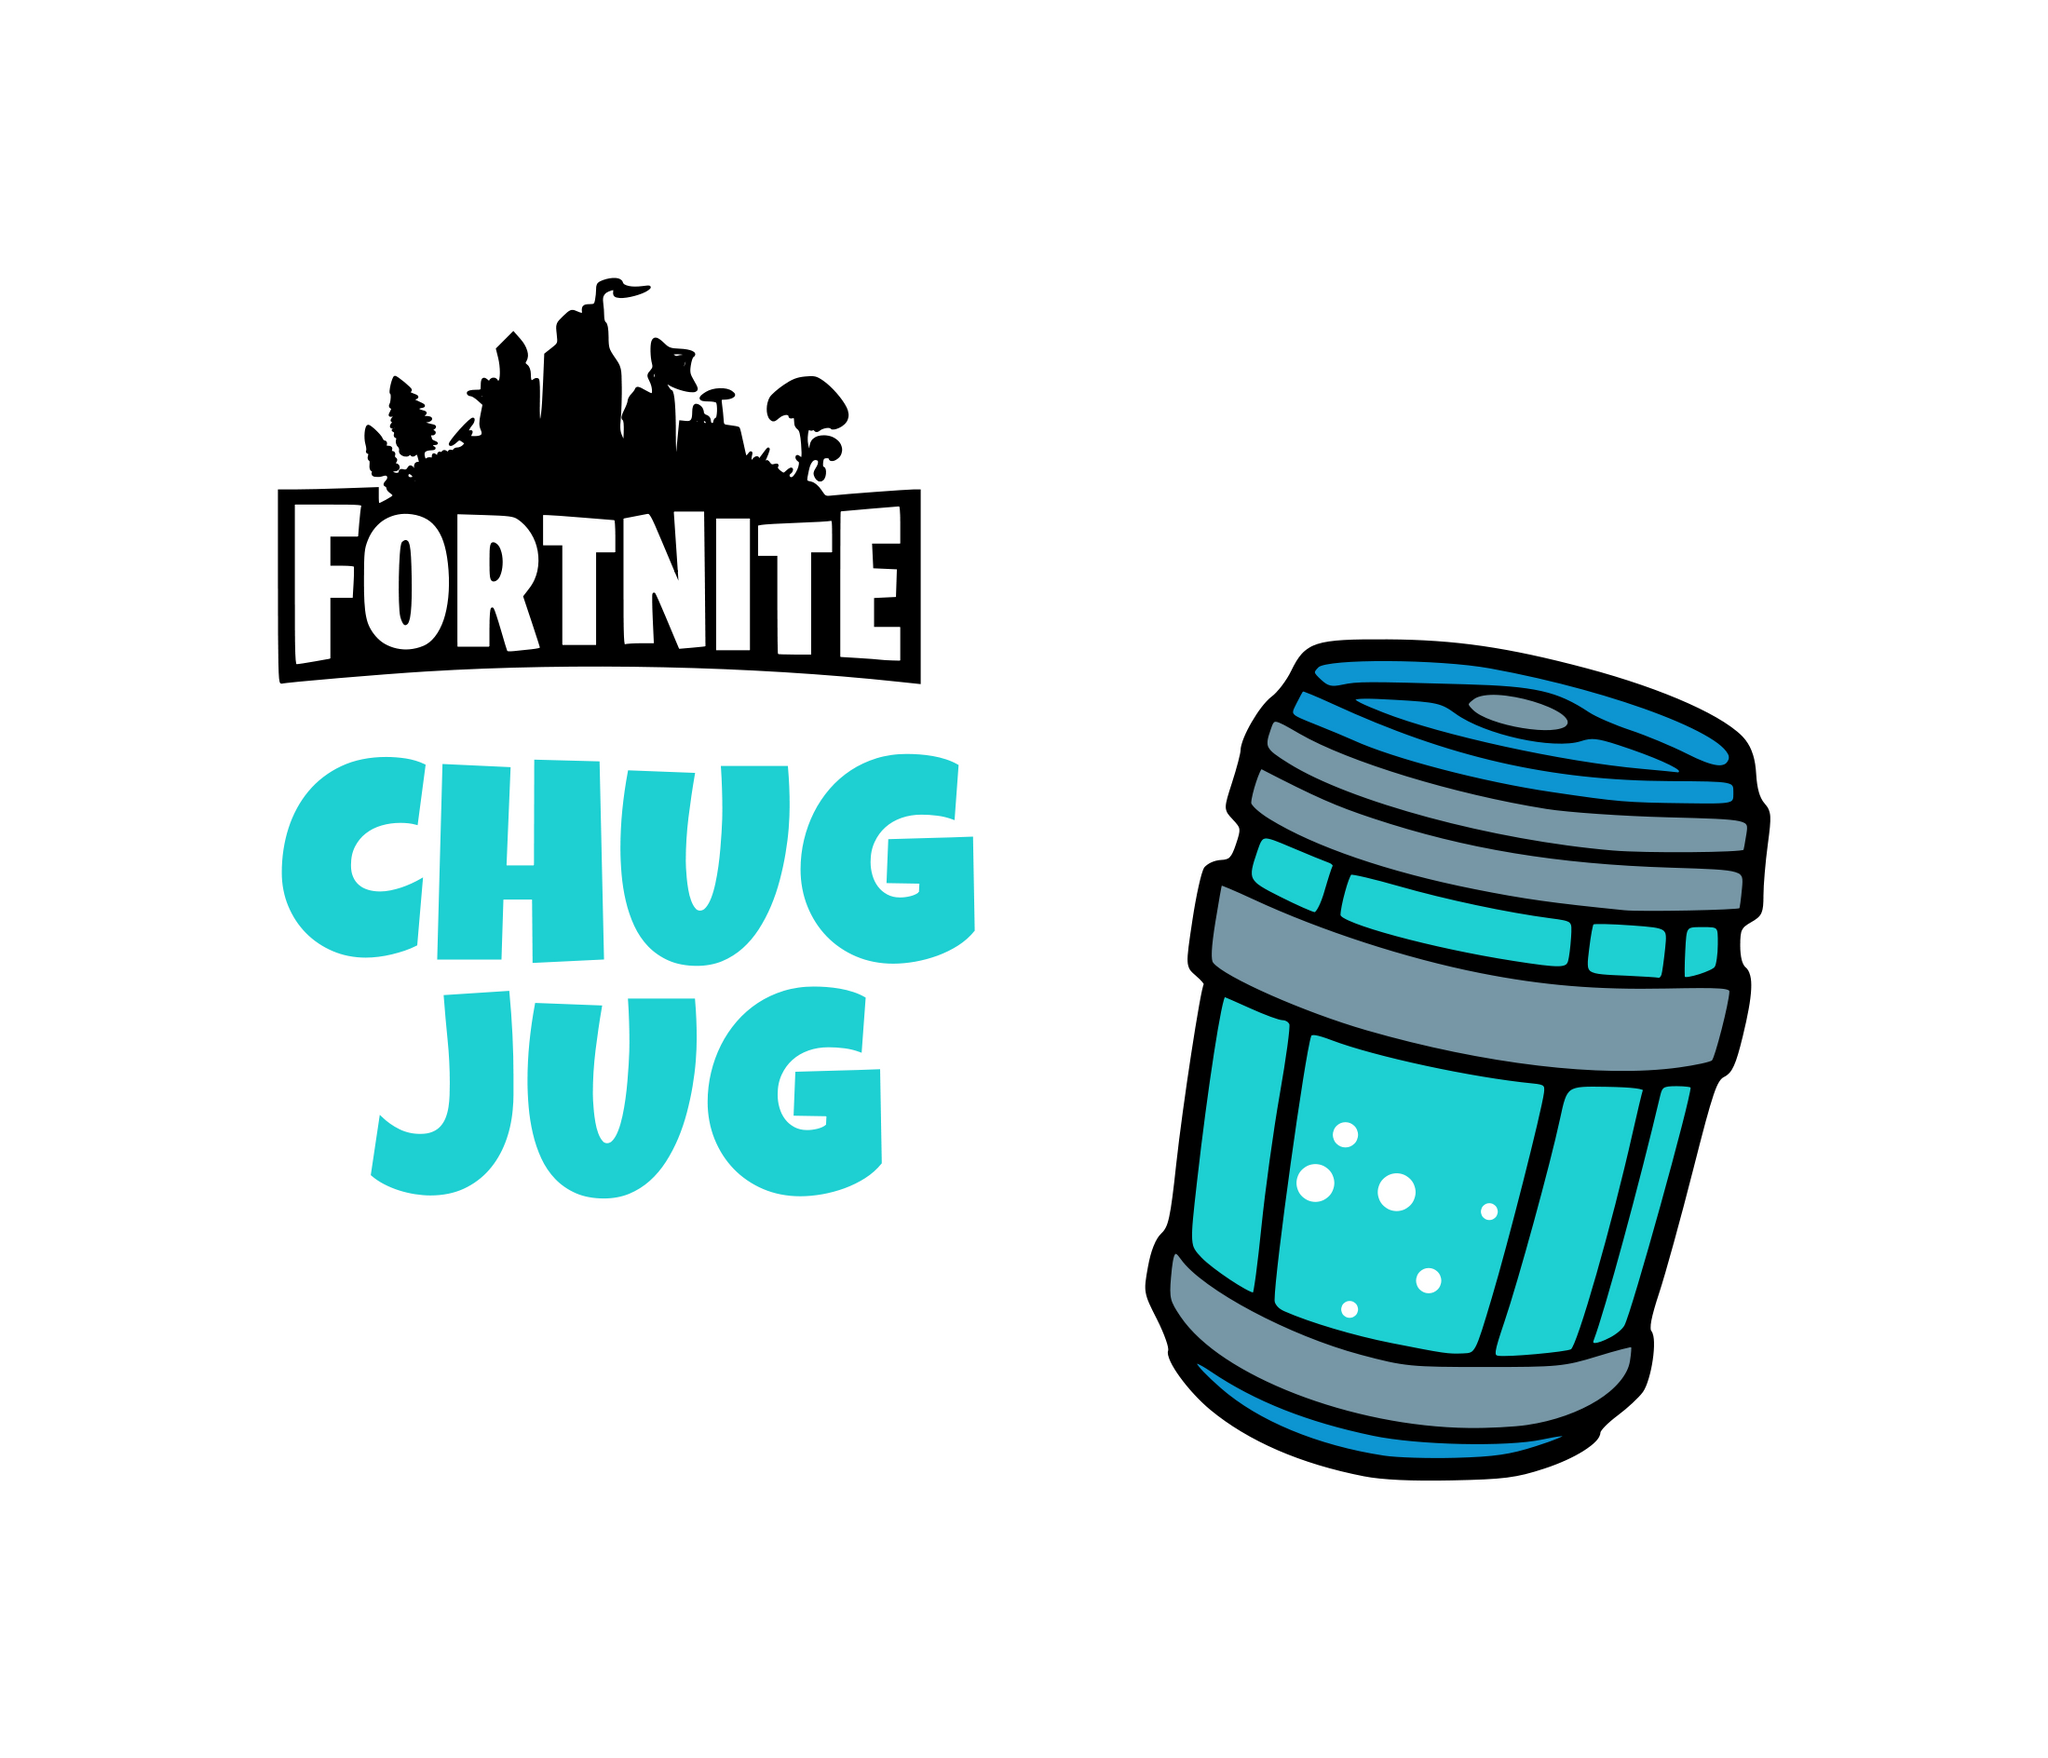 fortnite chug jug with you lyrics